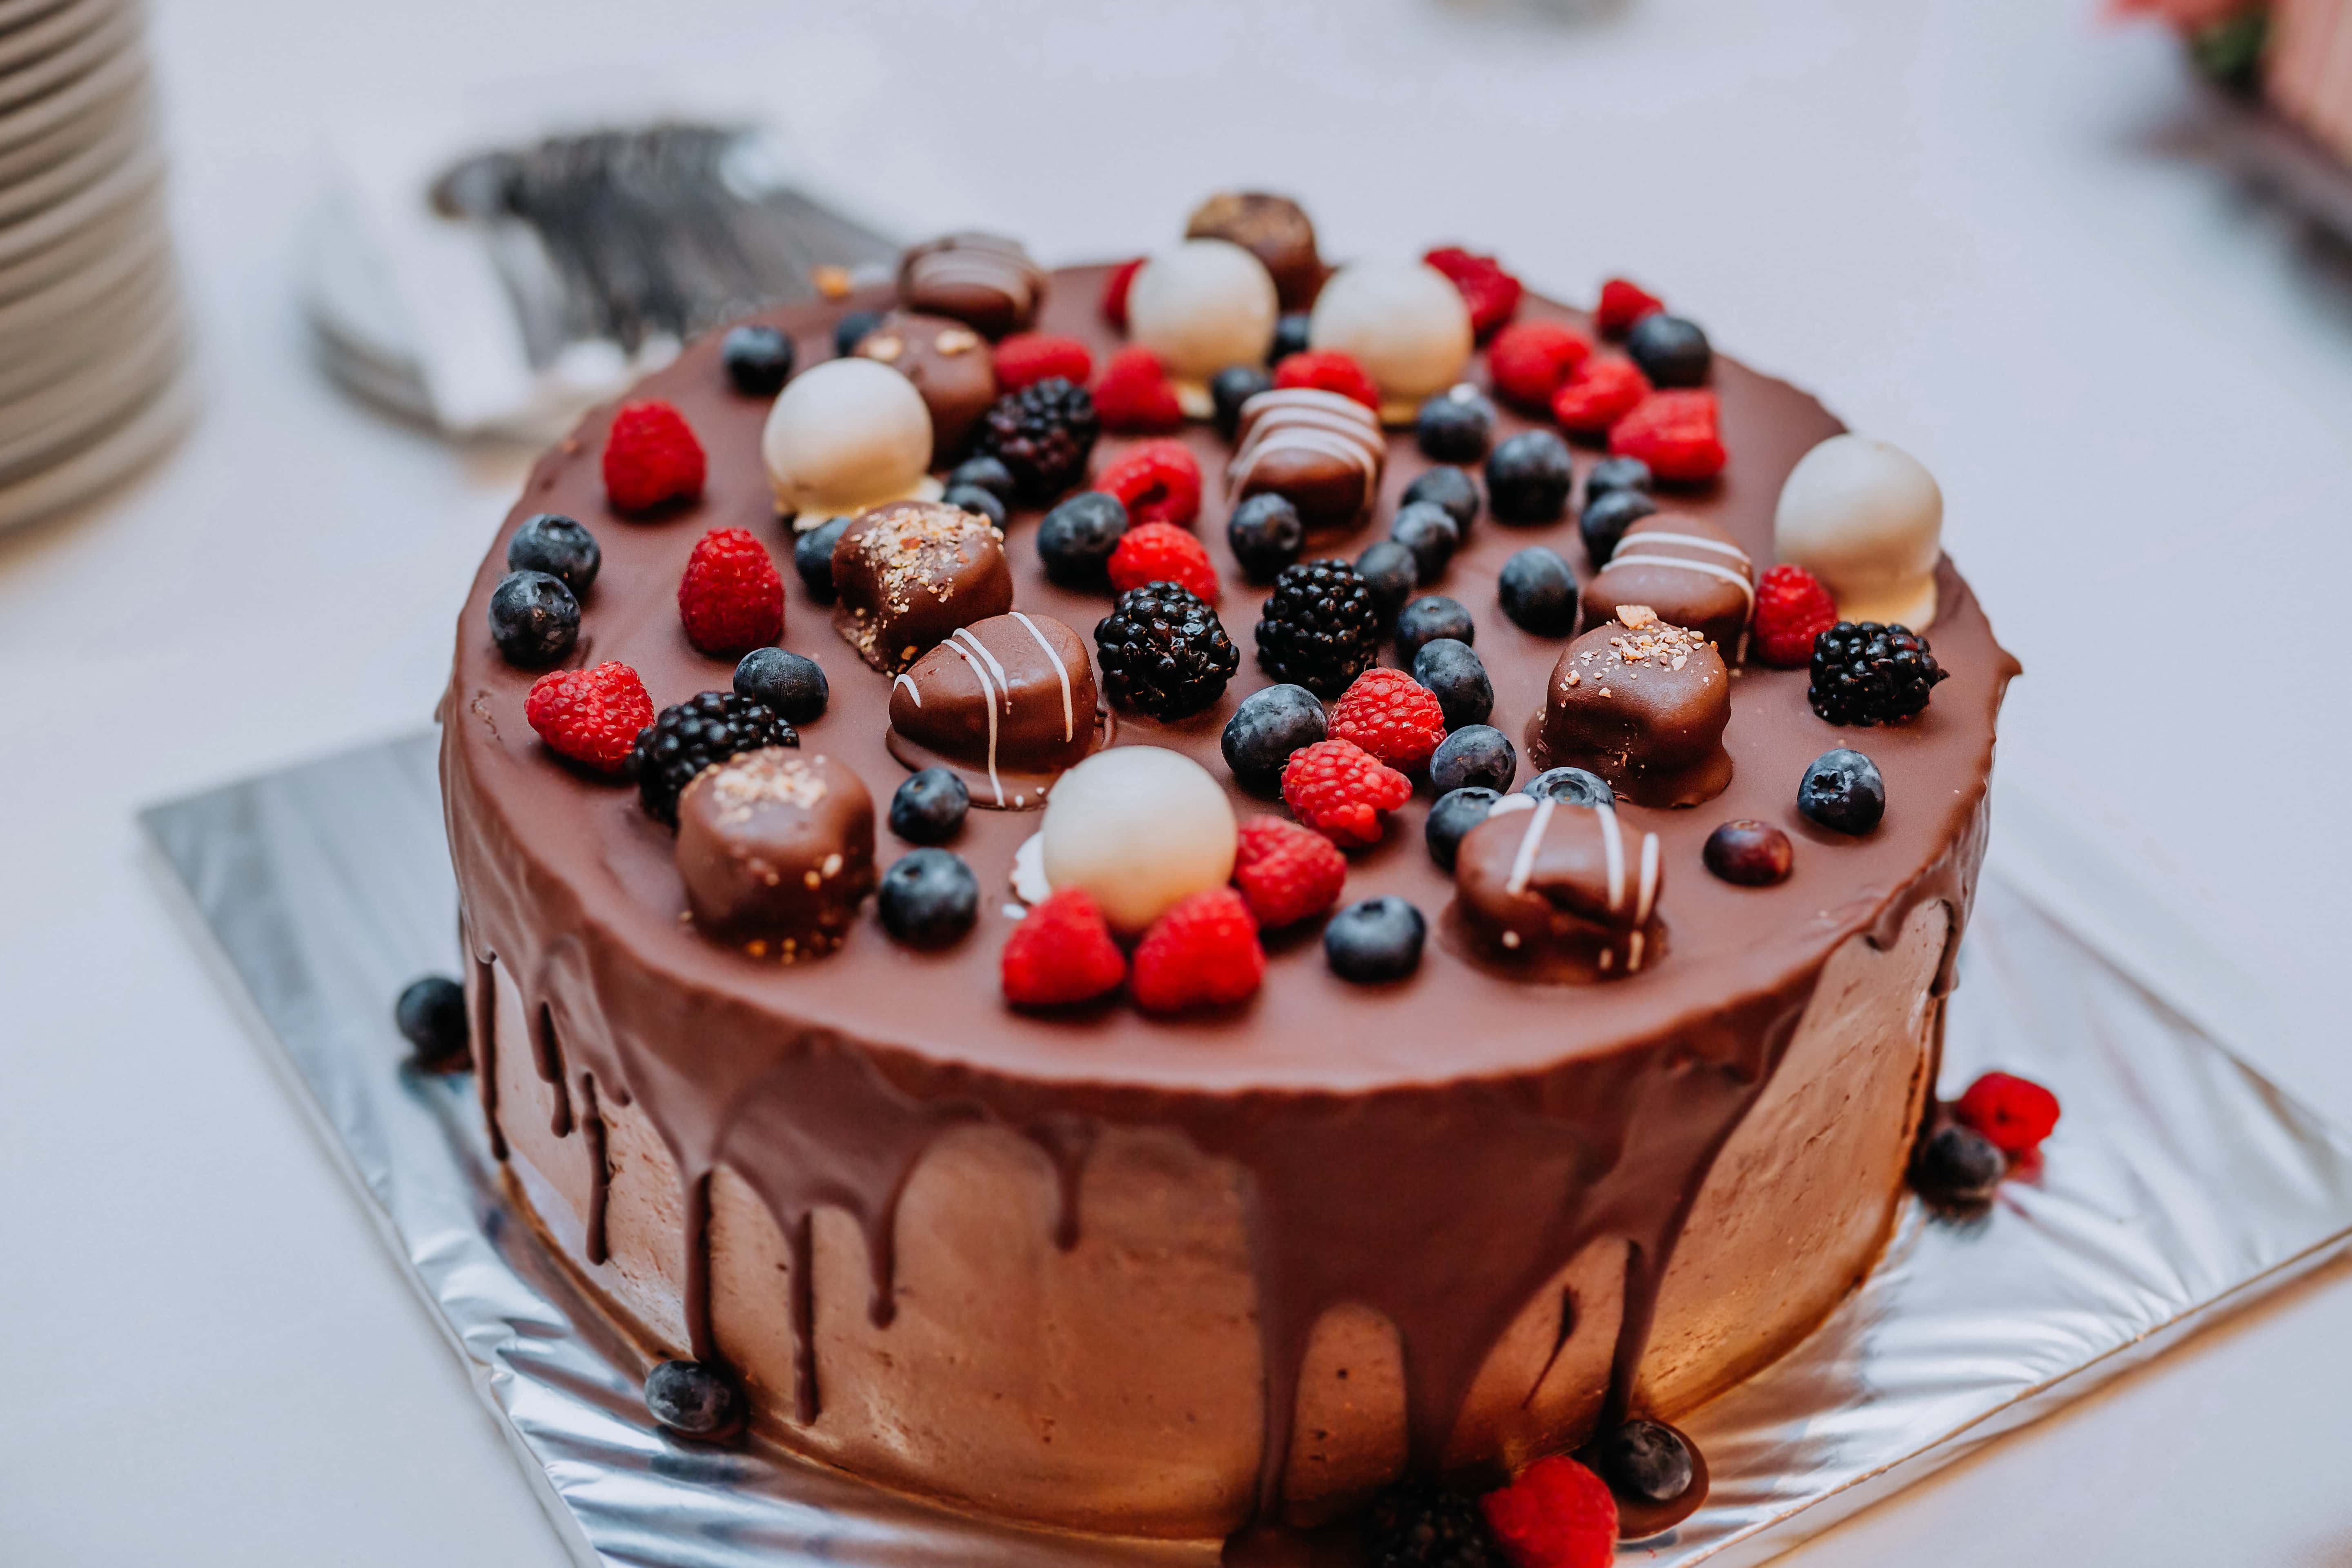 フリー写真画像 チョコレート ケーキ ブルーベリー フルーツ ブラックベリー ラズベリー イチゴ ケーキ 食品 チョコレート 砂糖